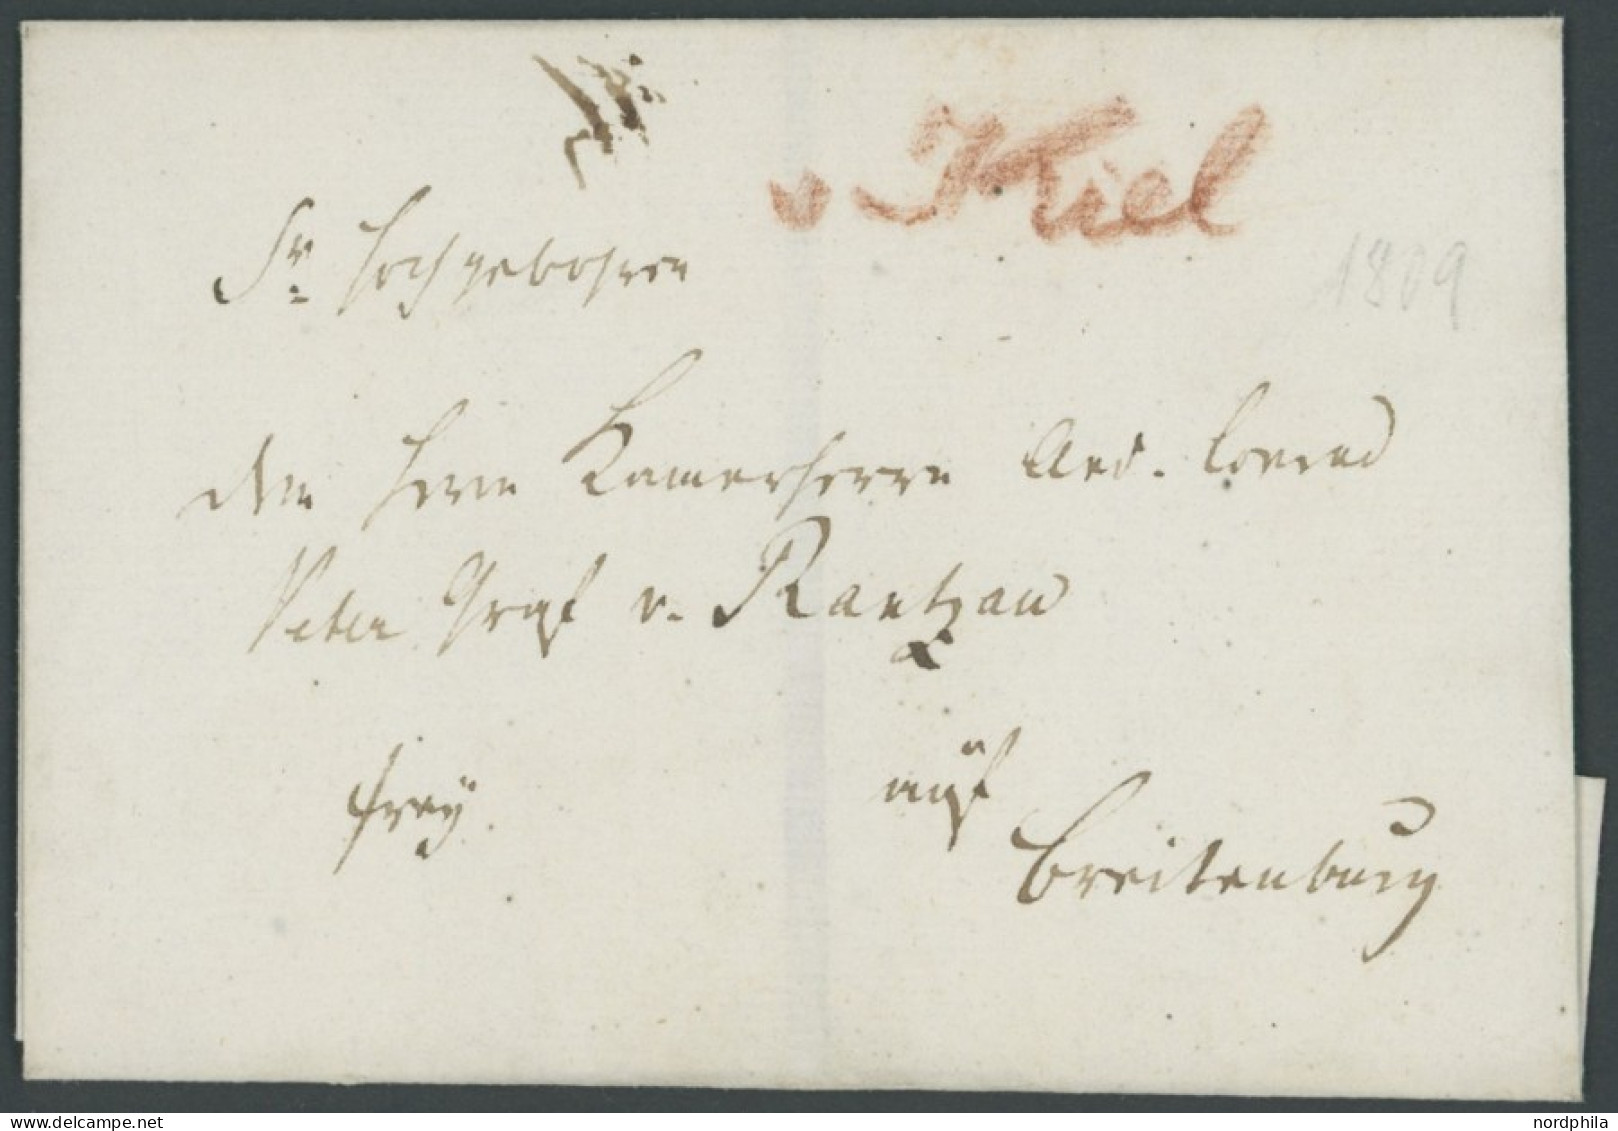 SCHLESWIG-HOLSTEIN 1809, V KIEL Handschriftlich In Rot Auf Briefhülle An Graf Von Rantzau Auf Breitenburg, Kabinett, R! - Vorphilatelie